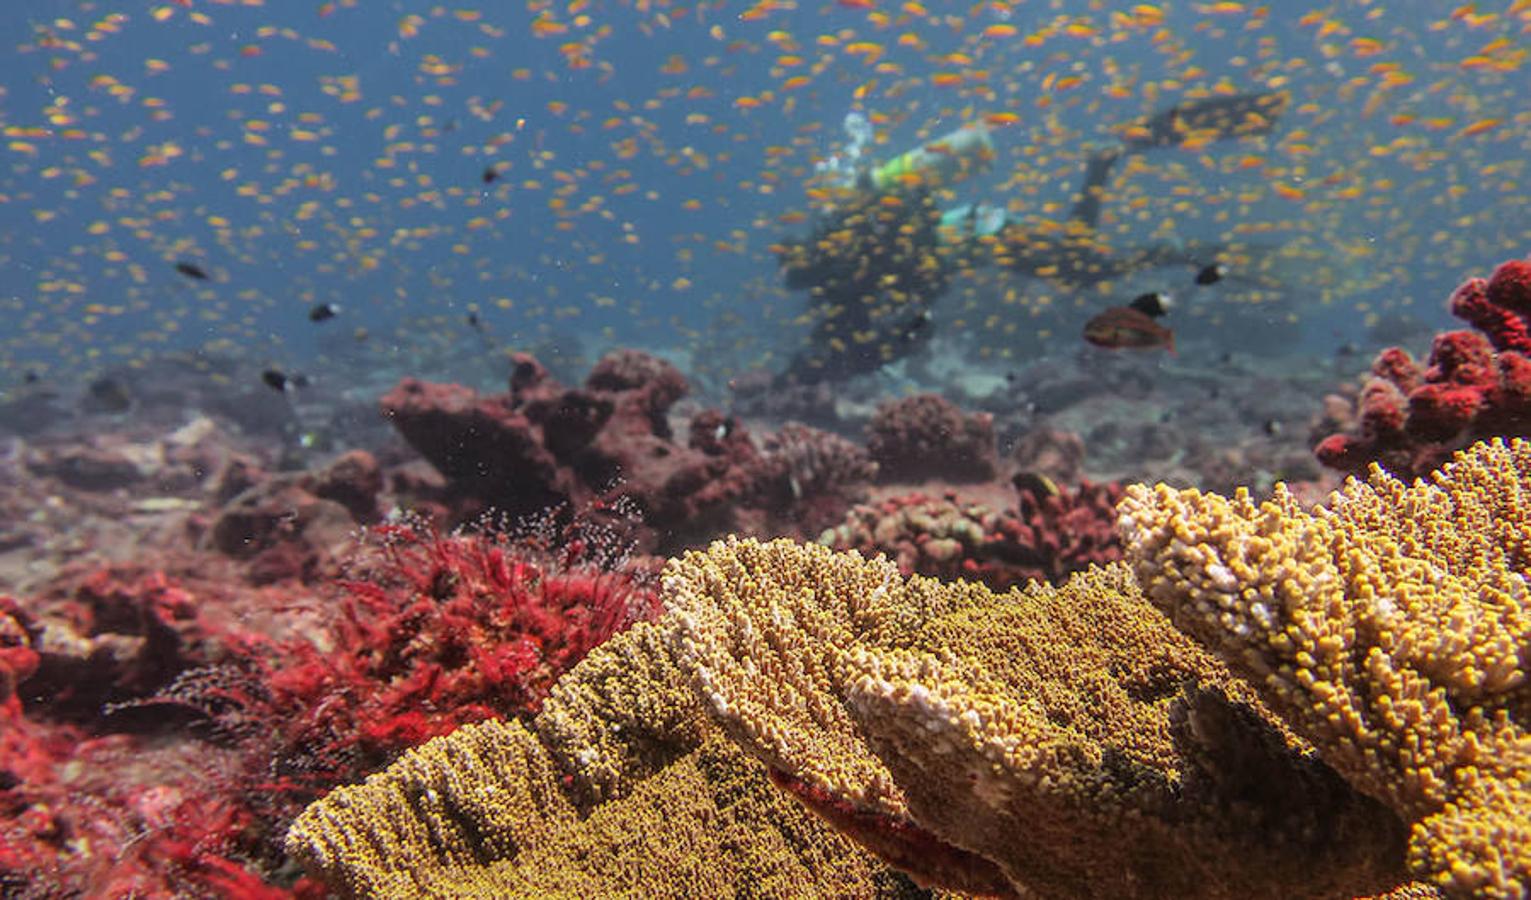 Un viaje por los corales del Pacífico en diez increíbles fotos. En una reciente expedición de 88 días a bordo del buque Hi&amp;#39;ialakai, de la Administración para los Océanos y la Atmósfera de Estados Unidos (NOAA), investigadores de este organismo y del Instituto de Biología Marina de Hawai, la Universidad de San Diego, la Institución Oceanográfica Scripps y el Instituto Oceanográfico Woods Hole, recolectaron datos para evaluar el cambio climático y oceánico, la salud de los ecosistemas coralinos y la extensión del blanqueamiento de los corales, que puede apreciarse en la primera fotografía. En su travesía, primero viajaron a las islas de Jarvis, Howland, Baker y Wake, todas ellas parte del Monumento Nacional Marino de las Islas Remotas del Pacífico, para luego atravesar el archipiélago de las Marianas, ascendiendo por la cadena de islas desde las islas pobladas del sur hasta lugares remotos en el norte. Repasamos esta expedición en diez fotografías.